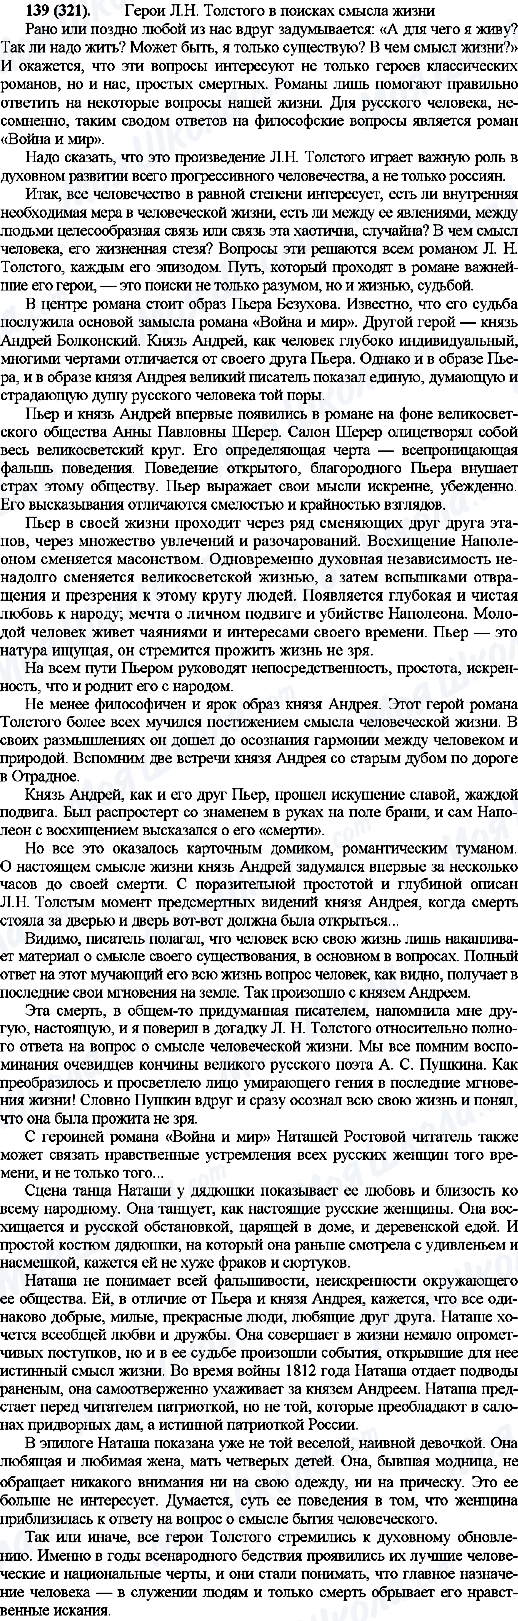 ГДЗ Російська мова 10 клас сторінка 139(321)